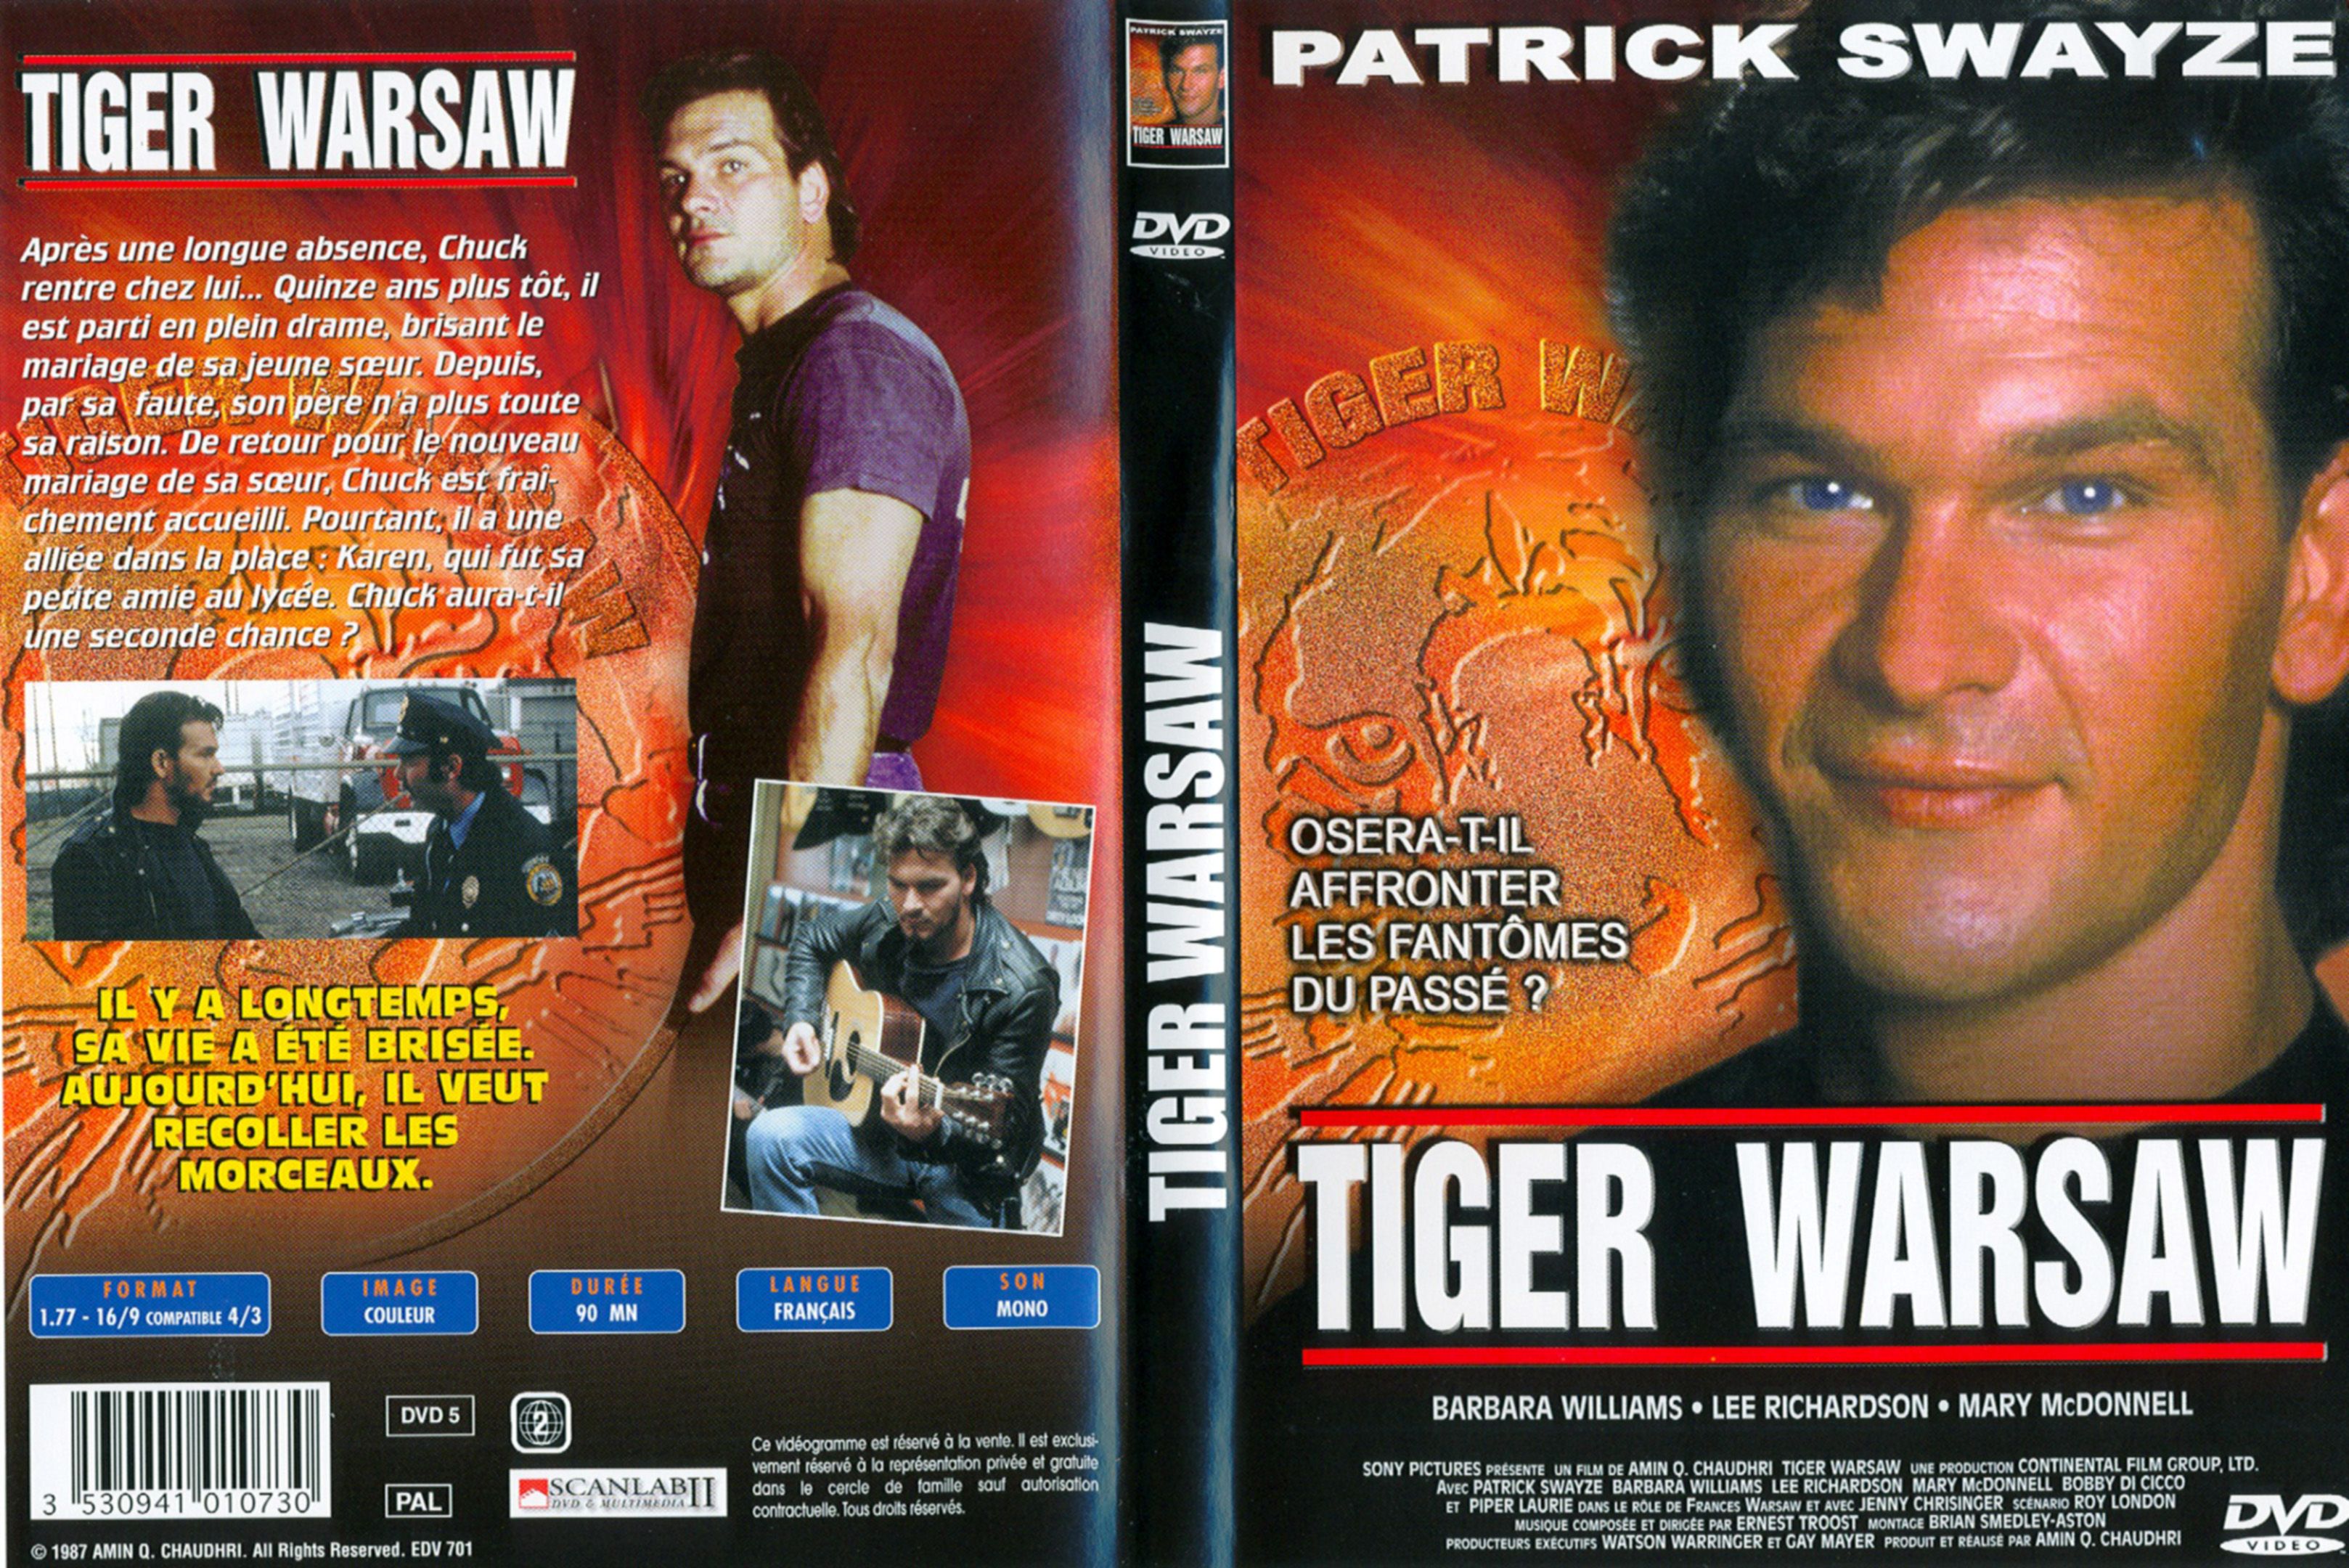 Jaquette DVD Tiger Warsaw v2